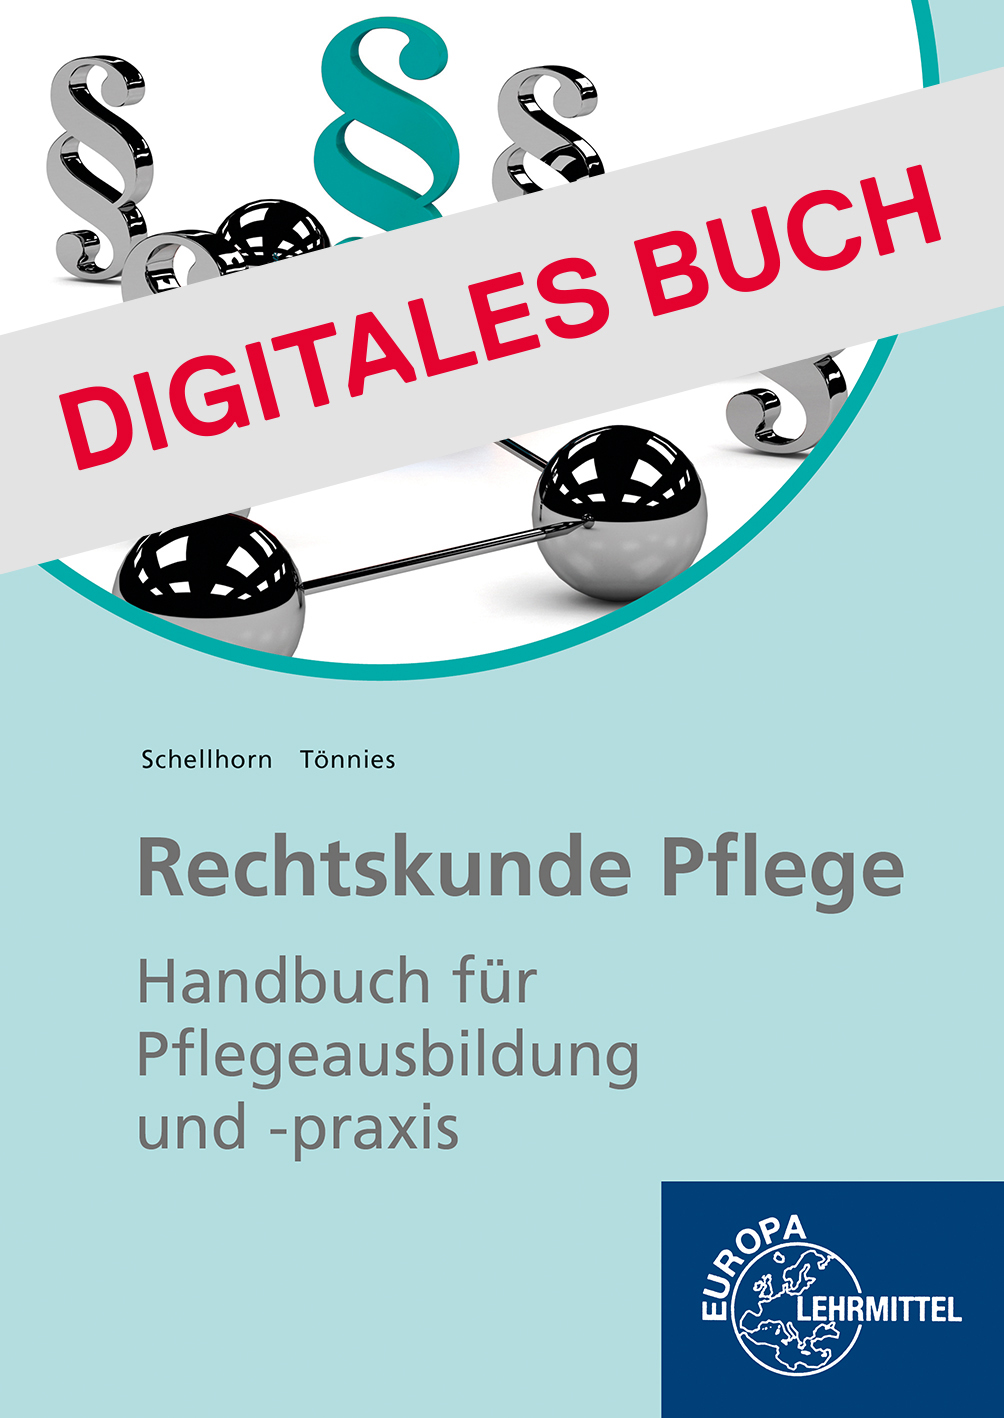 Rechtskunde Altenpflege - Digitales Buch